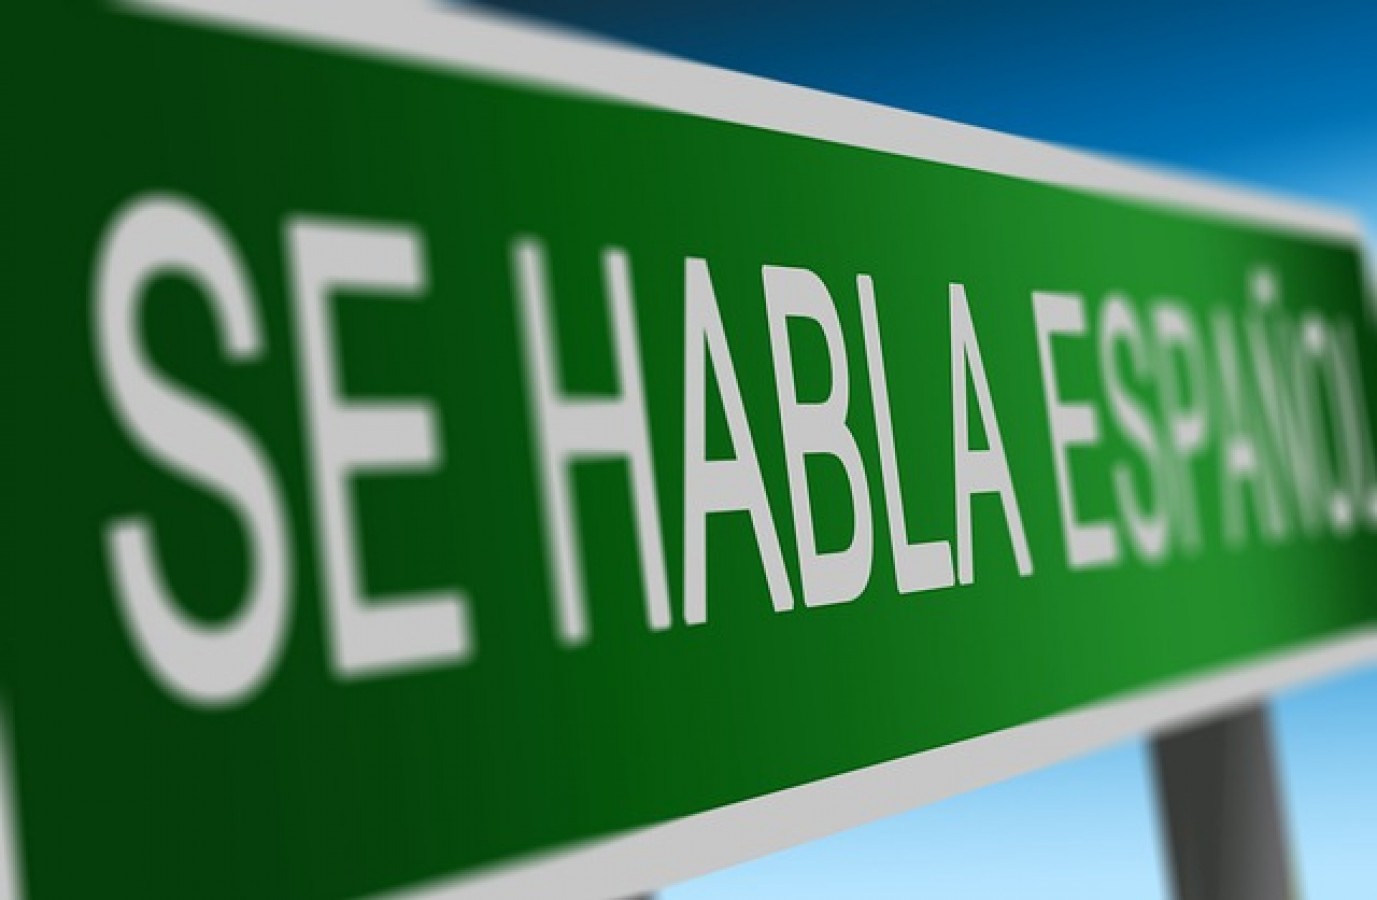 Habla español? – Avagy túlélni Amerikát